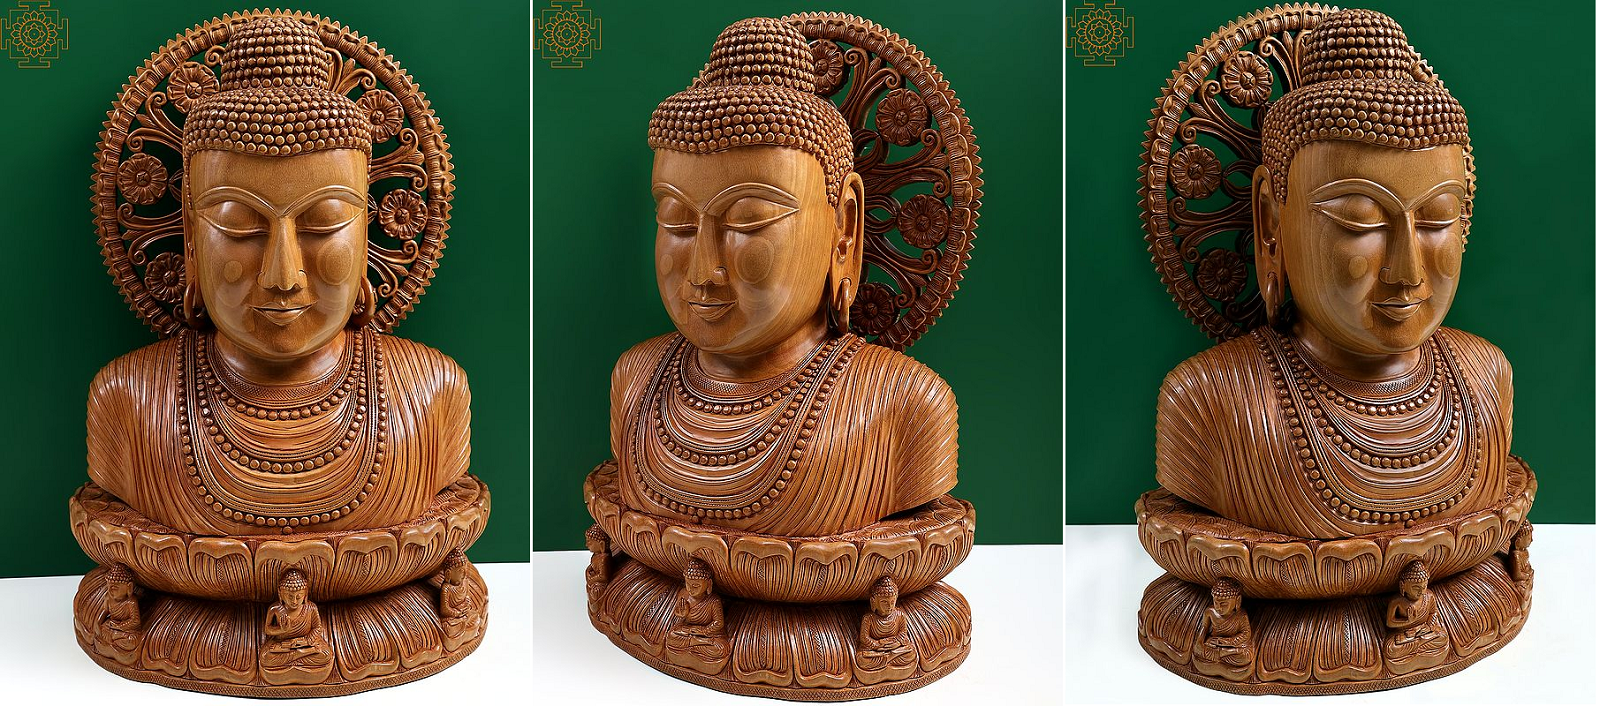 11 Inches Laughing Buddha Brass Statue, Home Decor Gift, Indian Brass Art,  Brass God Idol, Brass Sculpture, Brass Figurine Large - Etsy Hong Kong